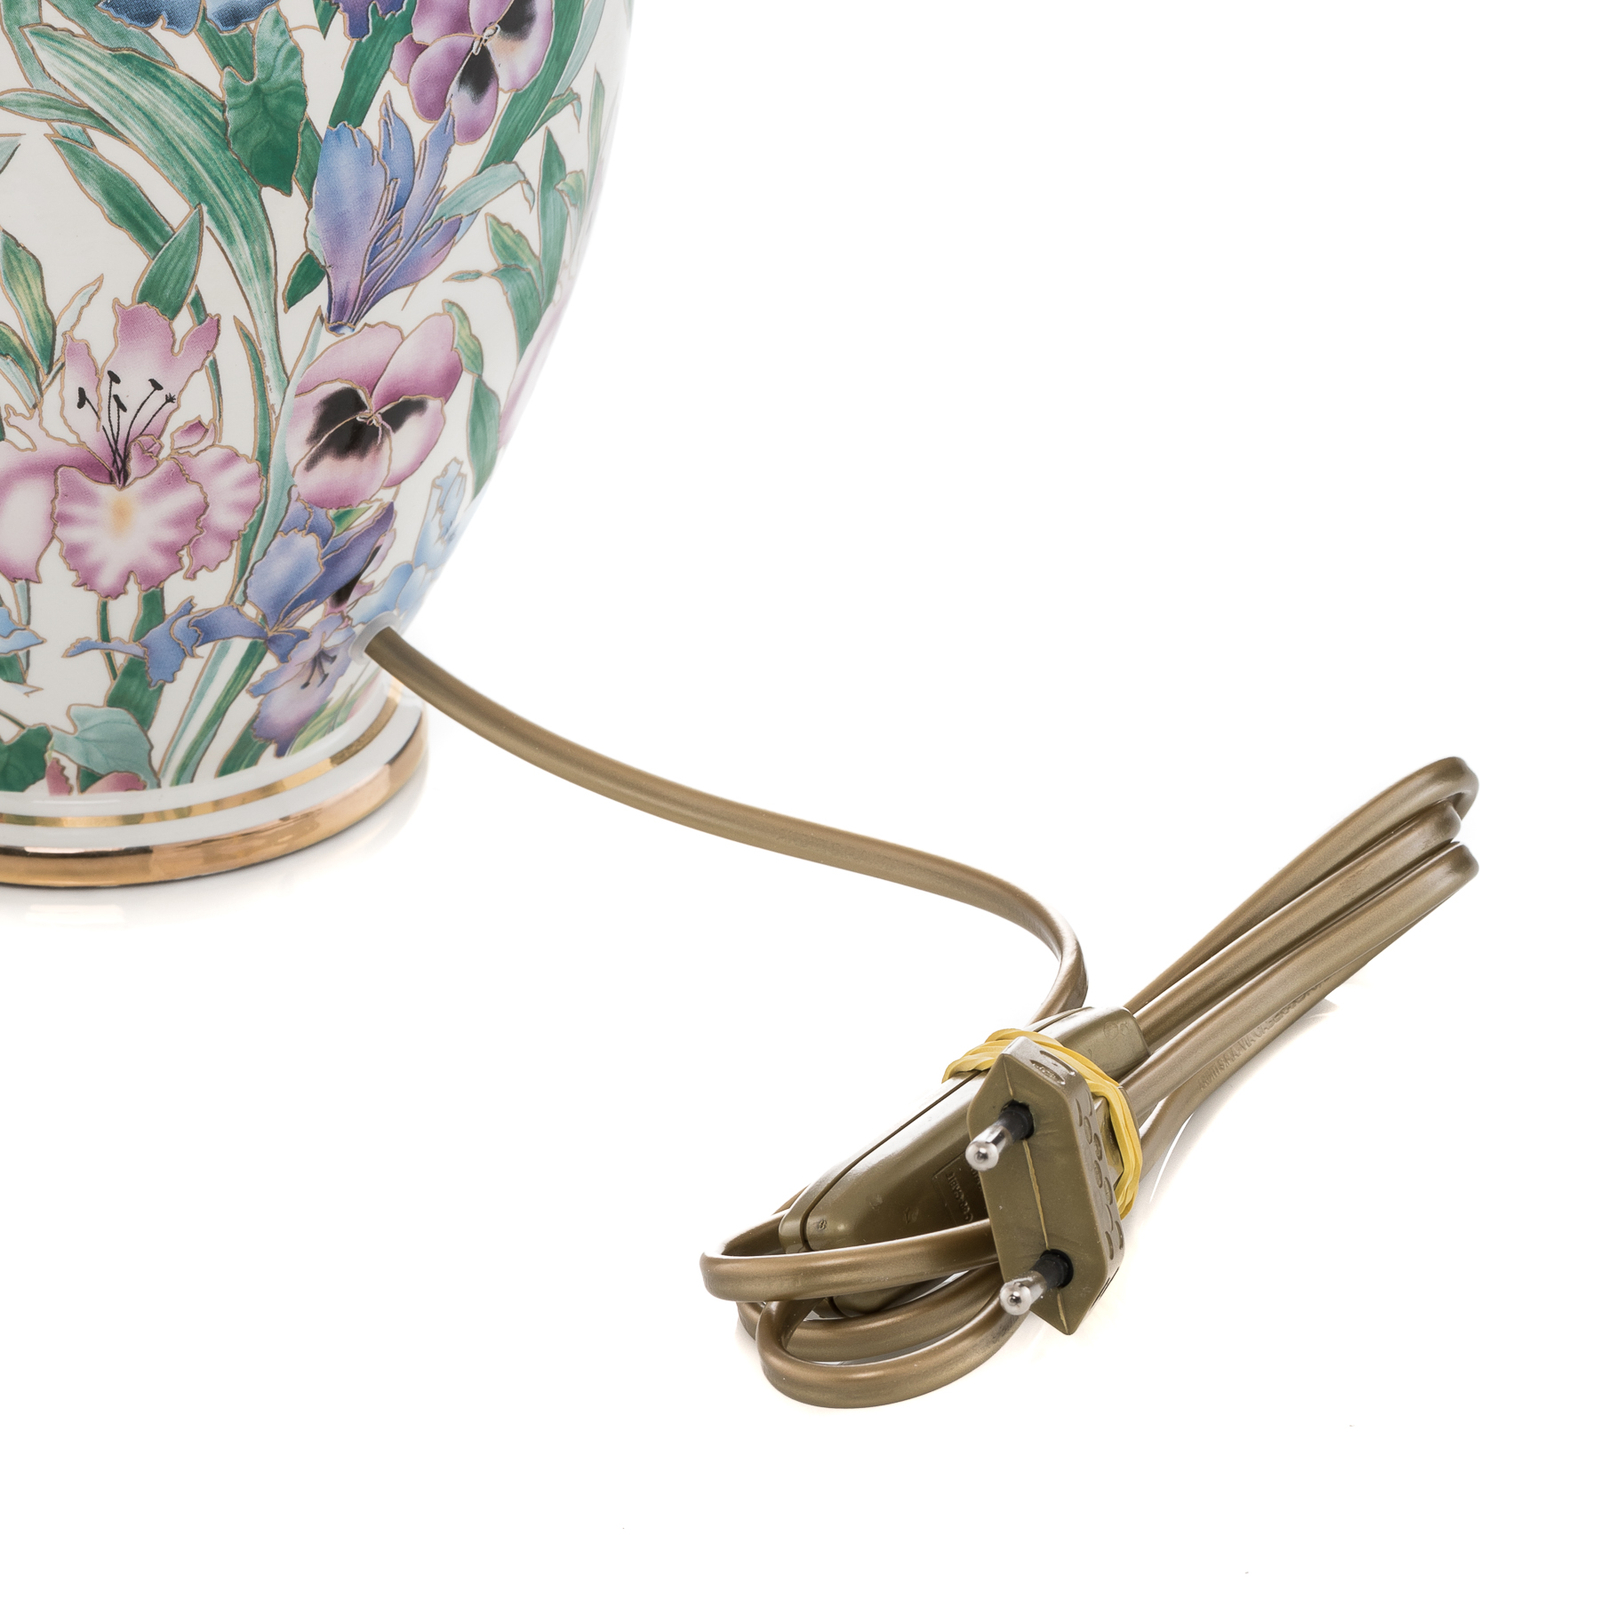 KOLARZ Giardino Panse – stolní lampa květiny 30 cm